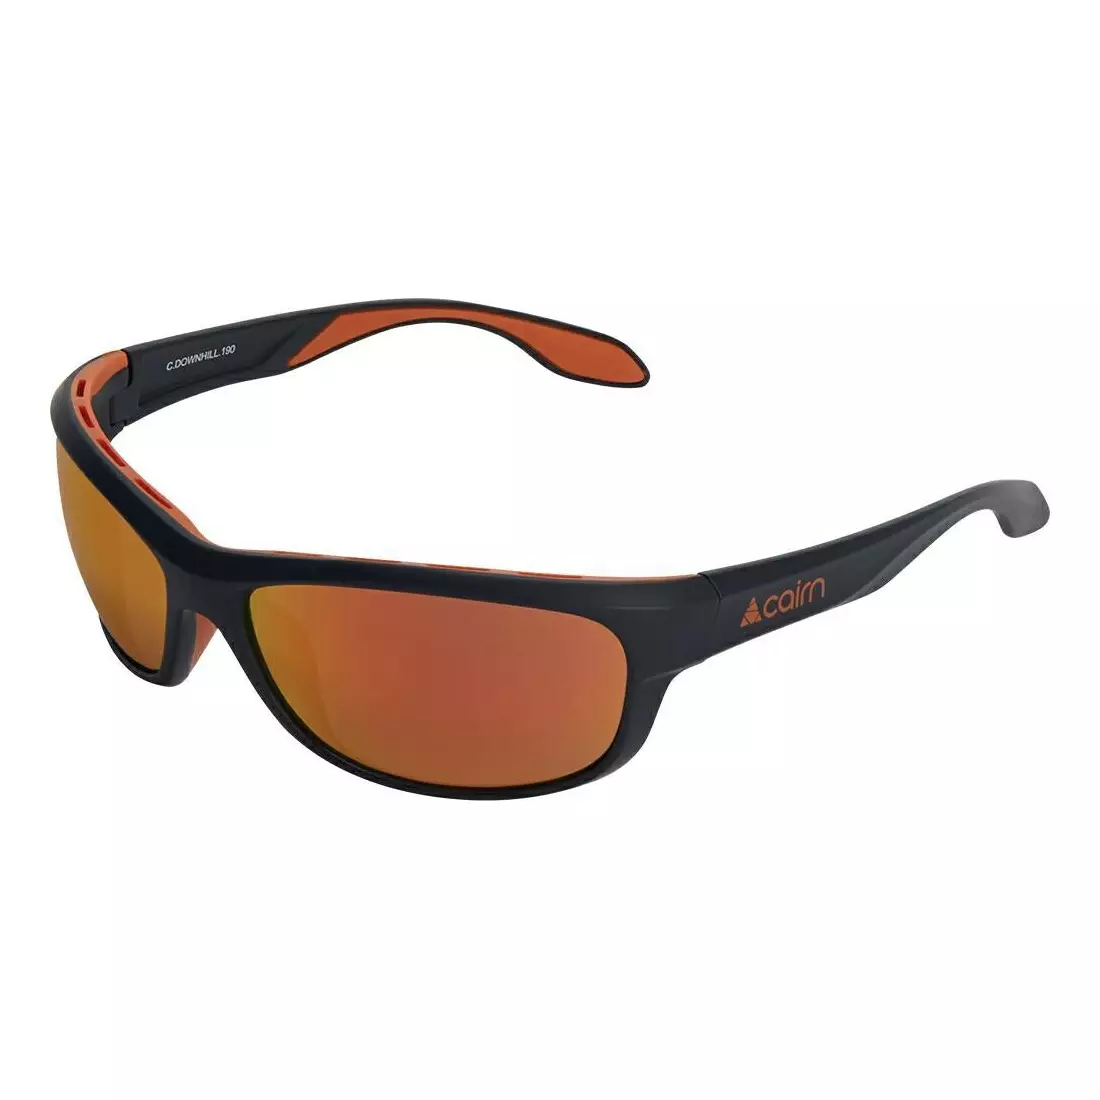 CAIRN sportovní brýle DOWNHILL 190, black-orange CDOWNHILL190